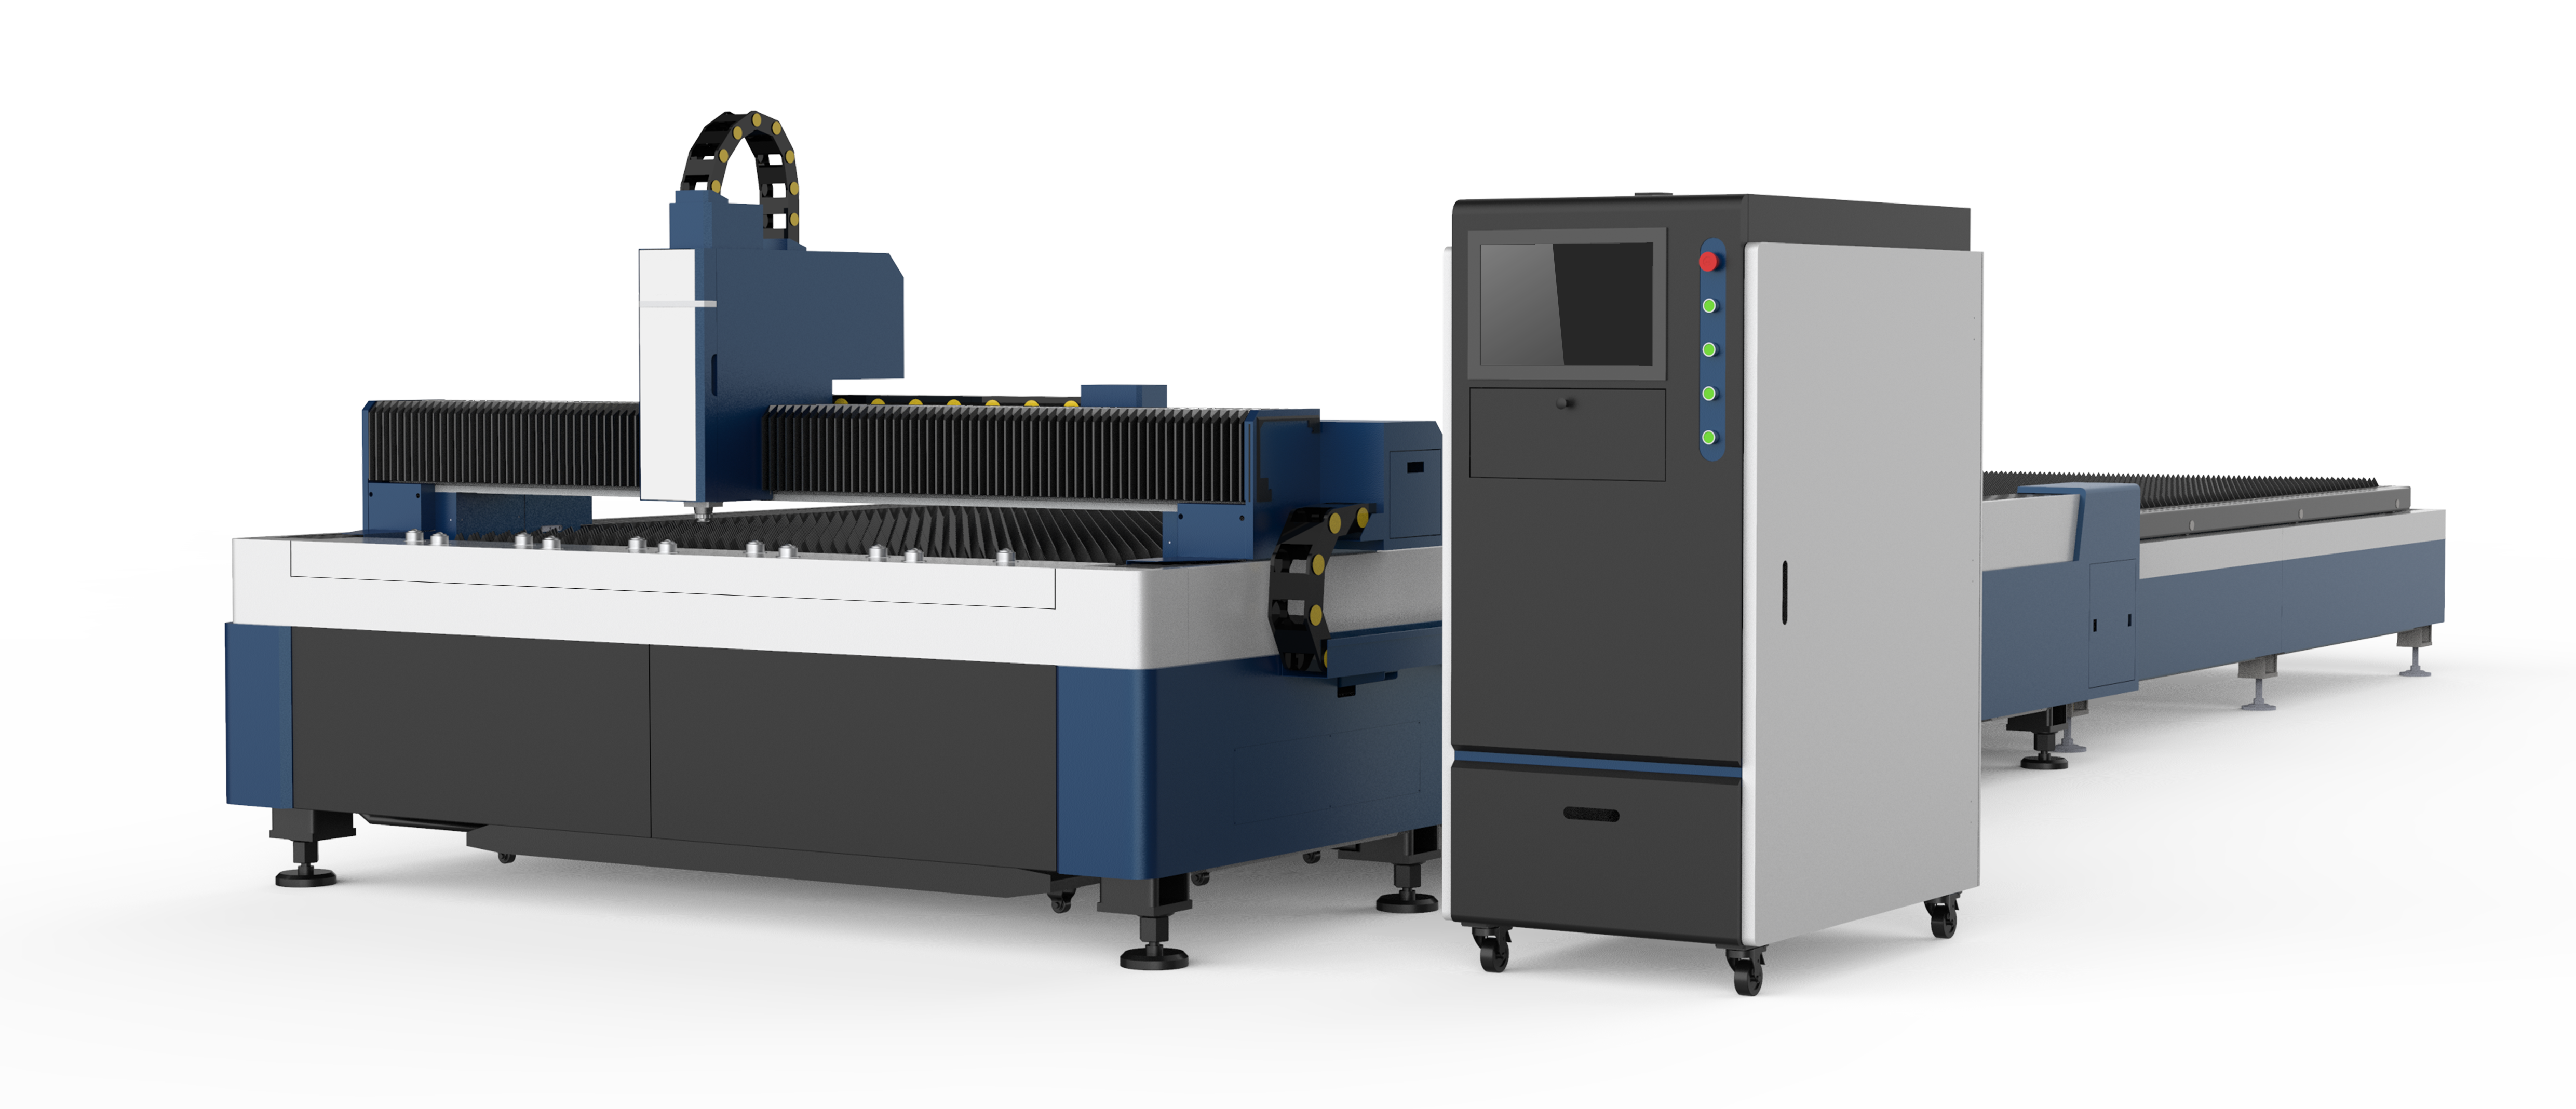 Máquina de corte a laser de aço inoxidável CNC